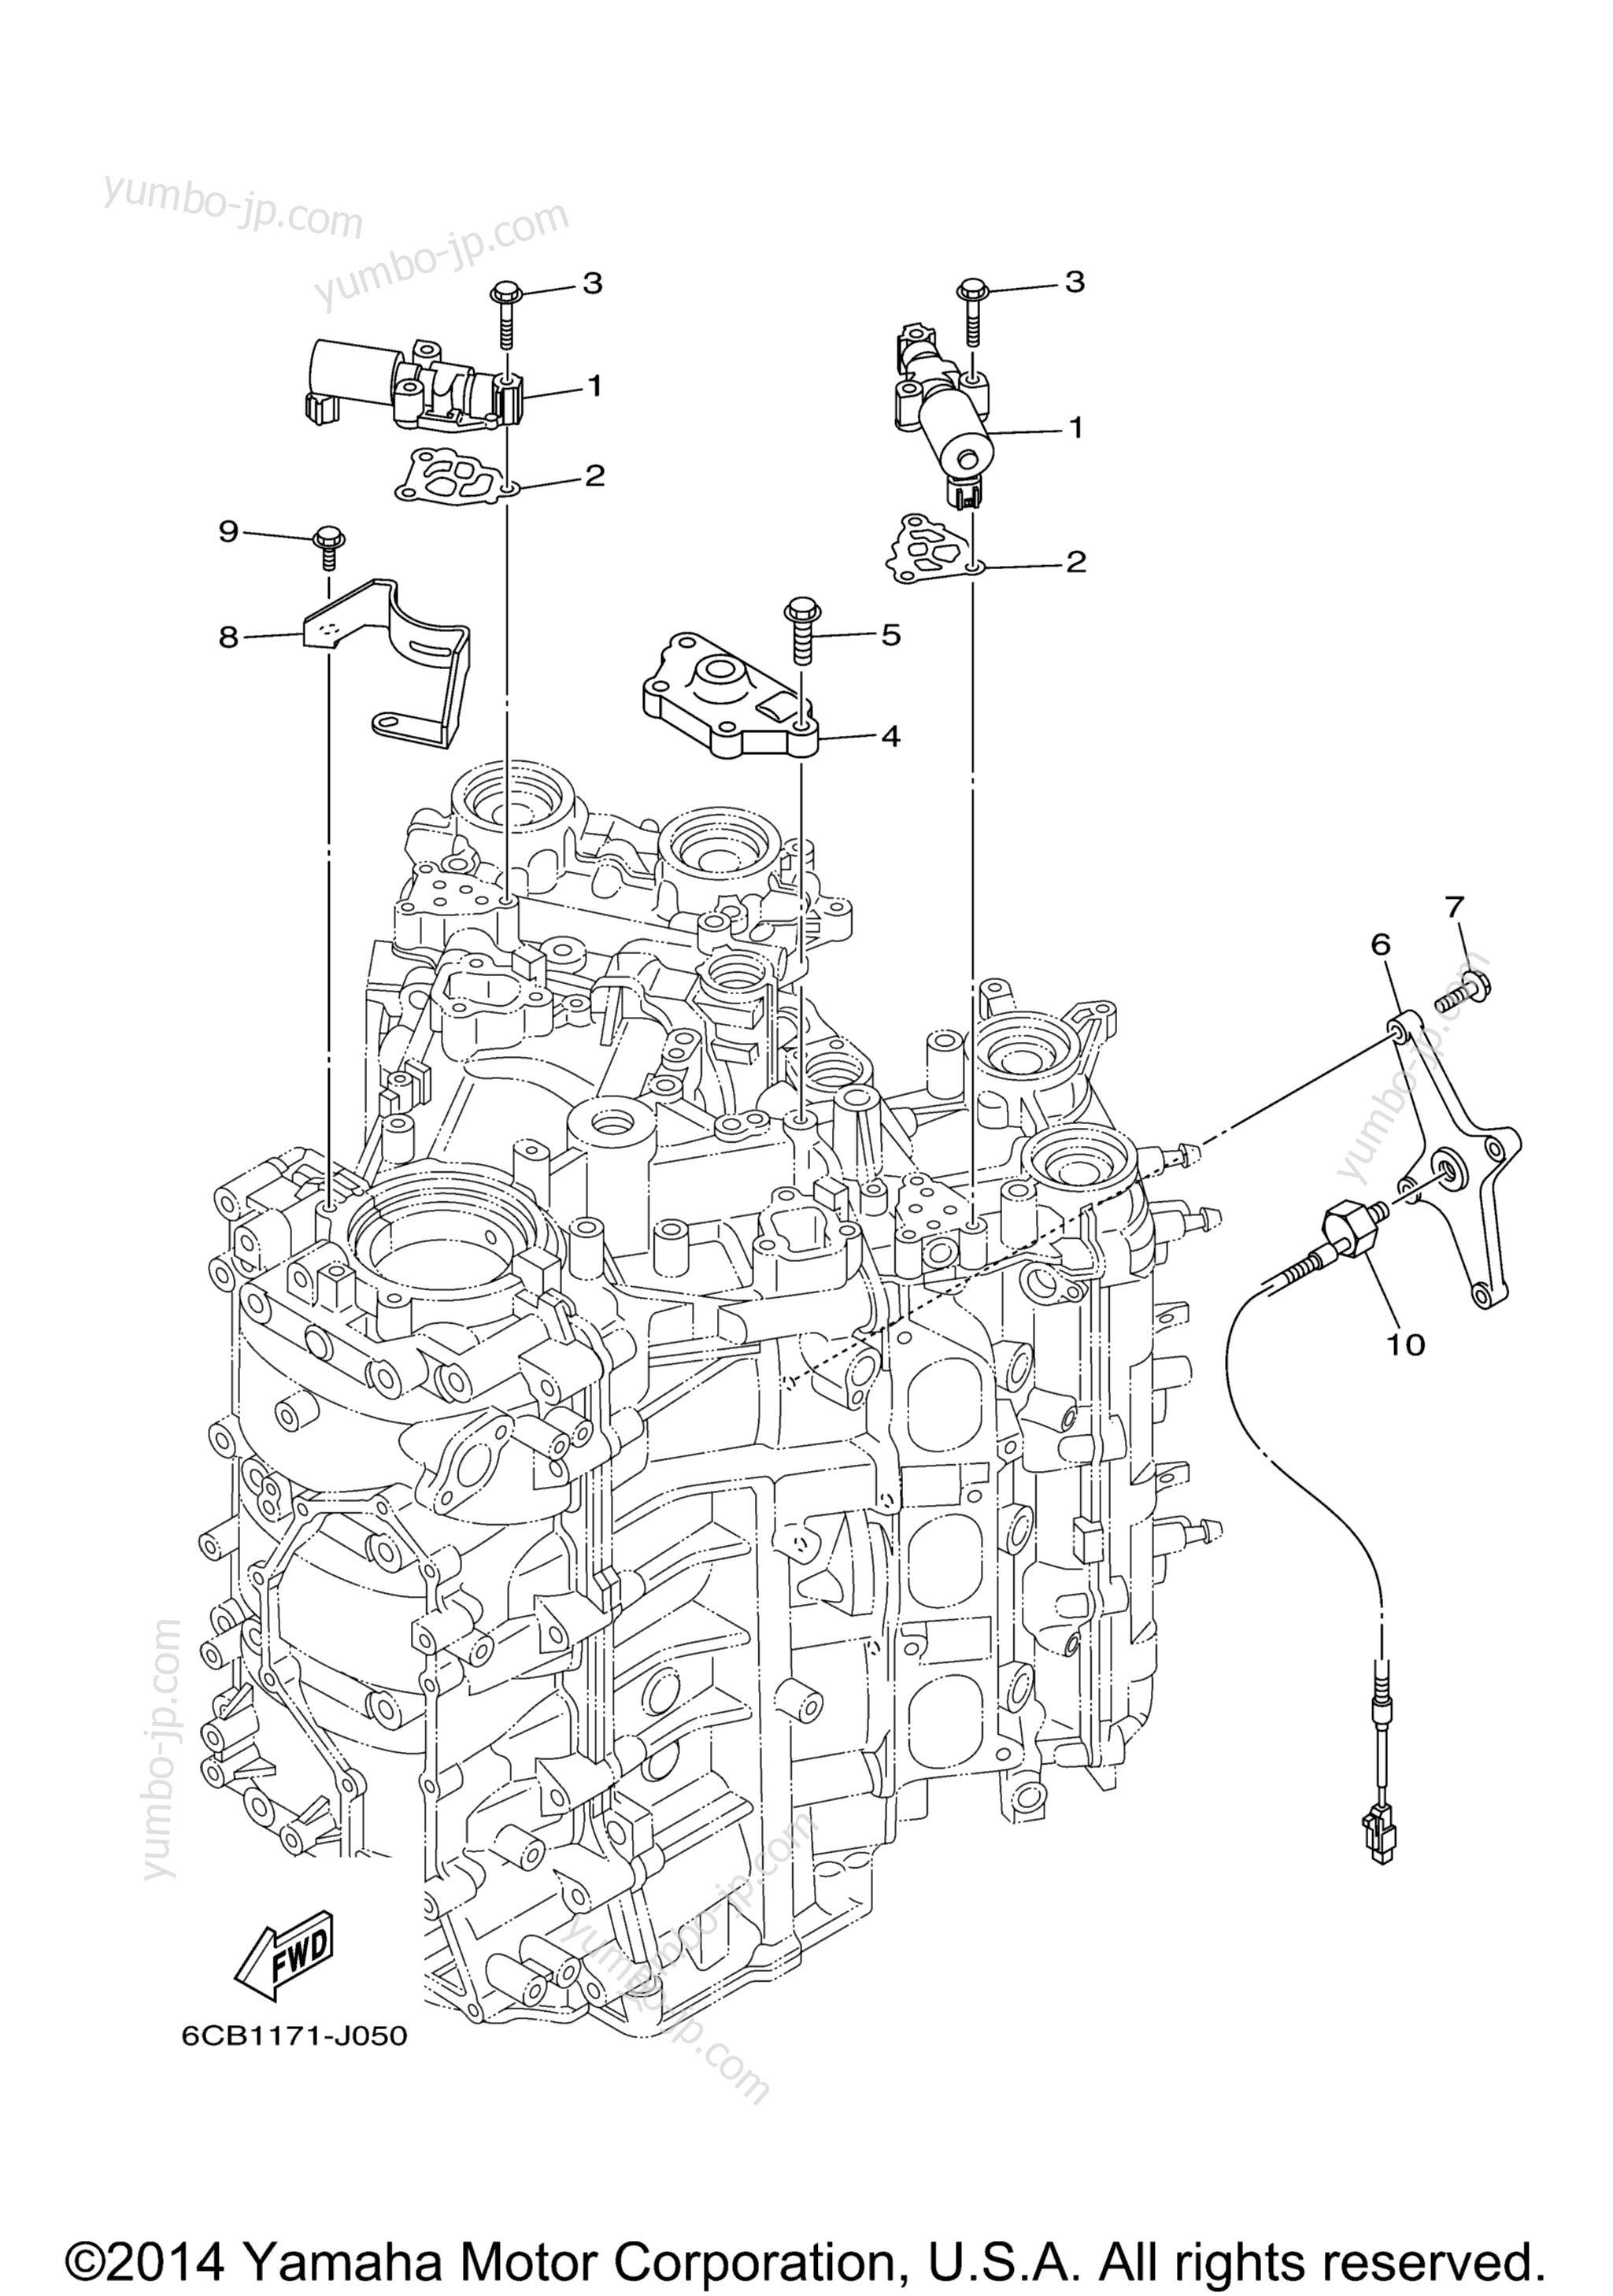 Cylinder Crankcase 3 для лодочных моторов YAMAHA VF250LA_04 (0411) 2006 г.